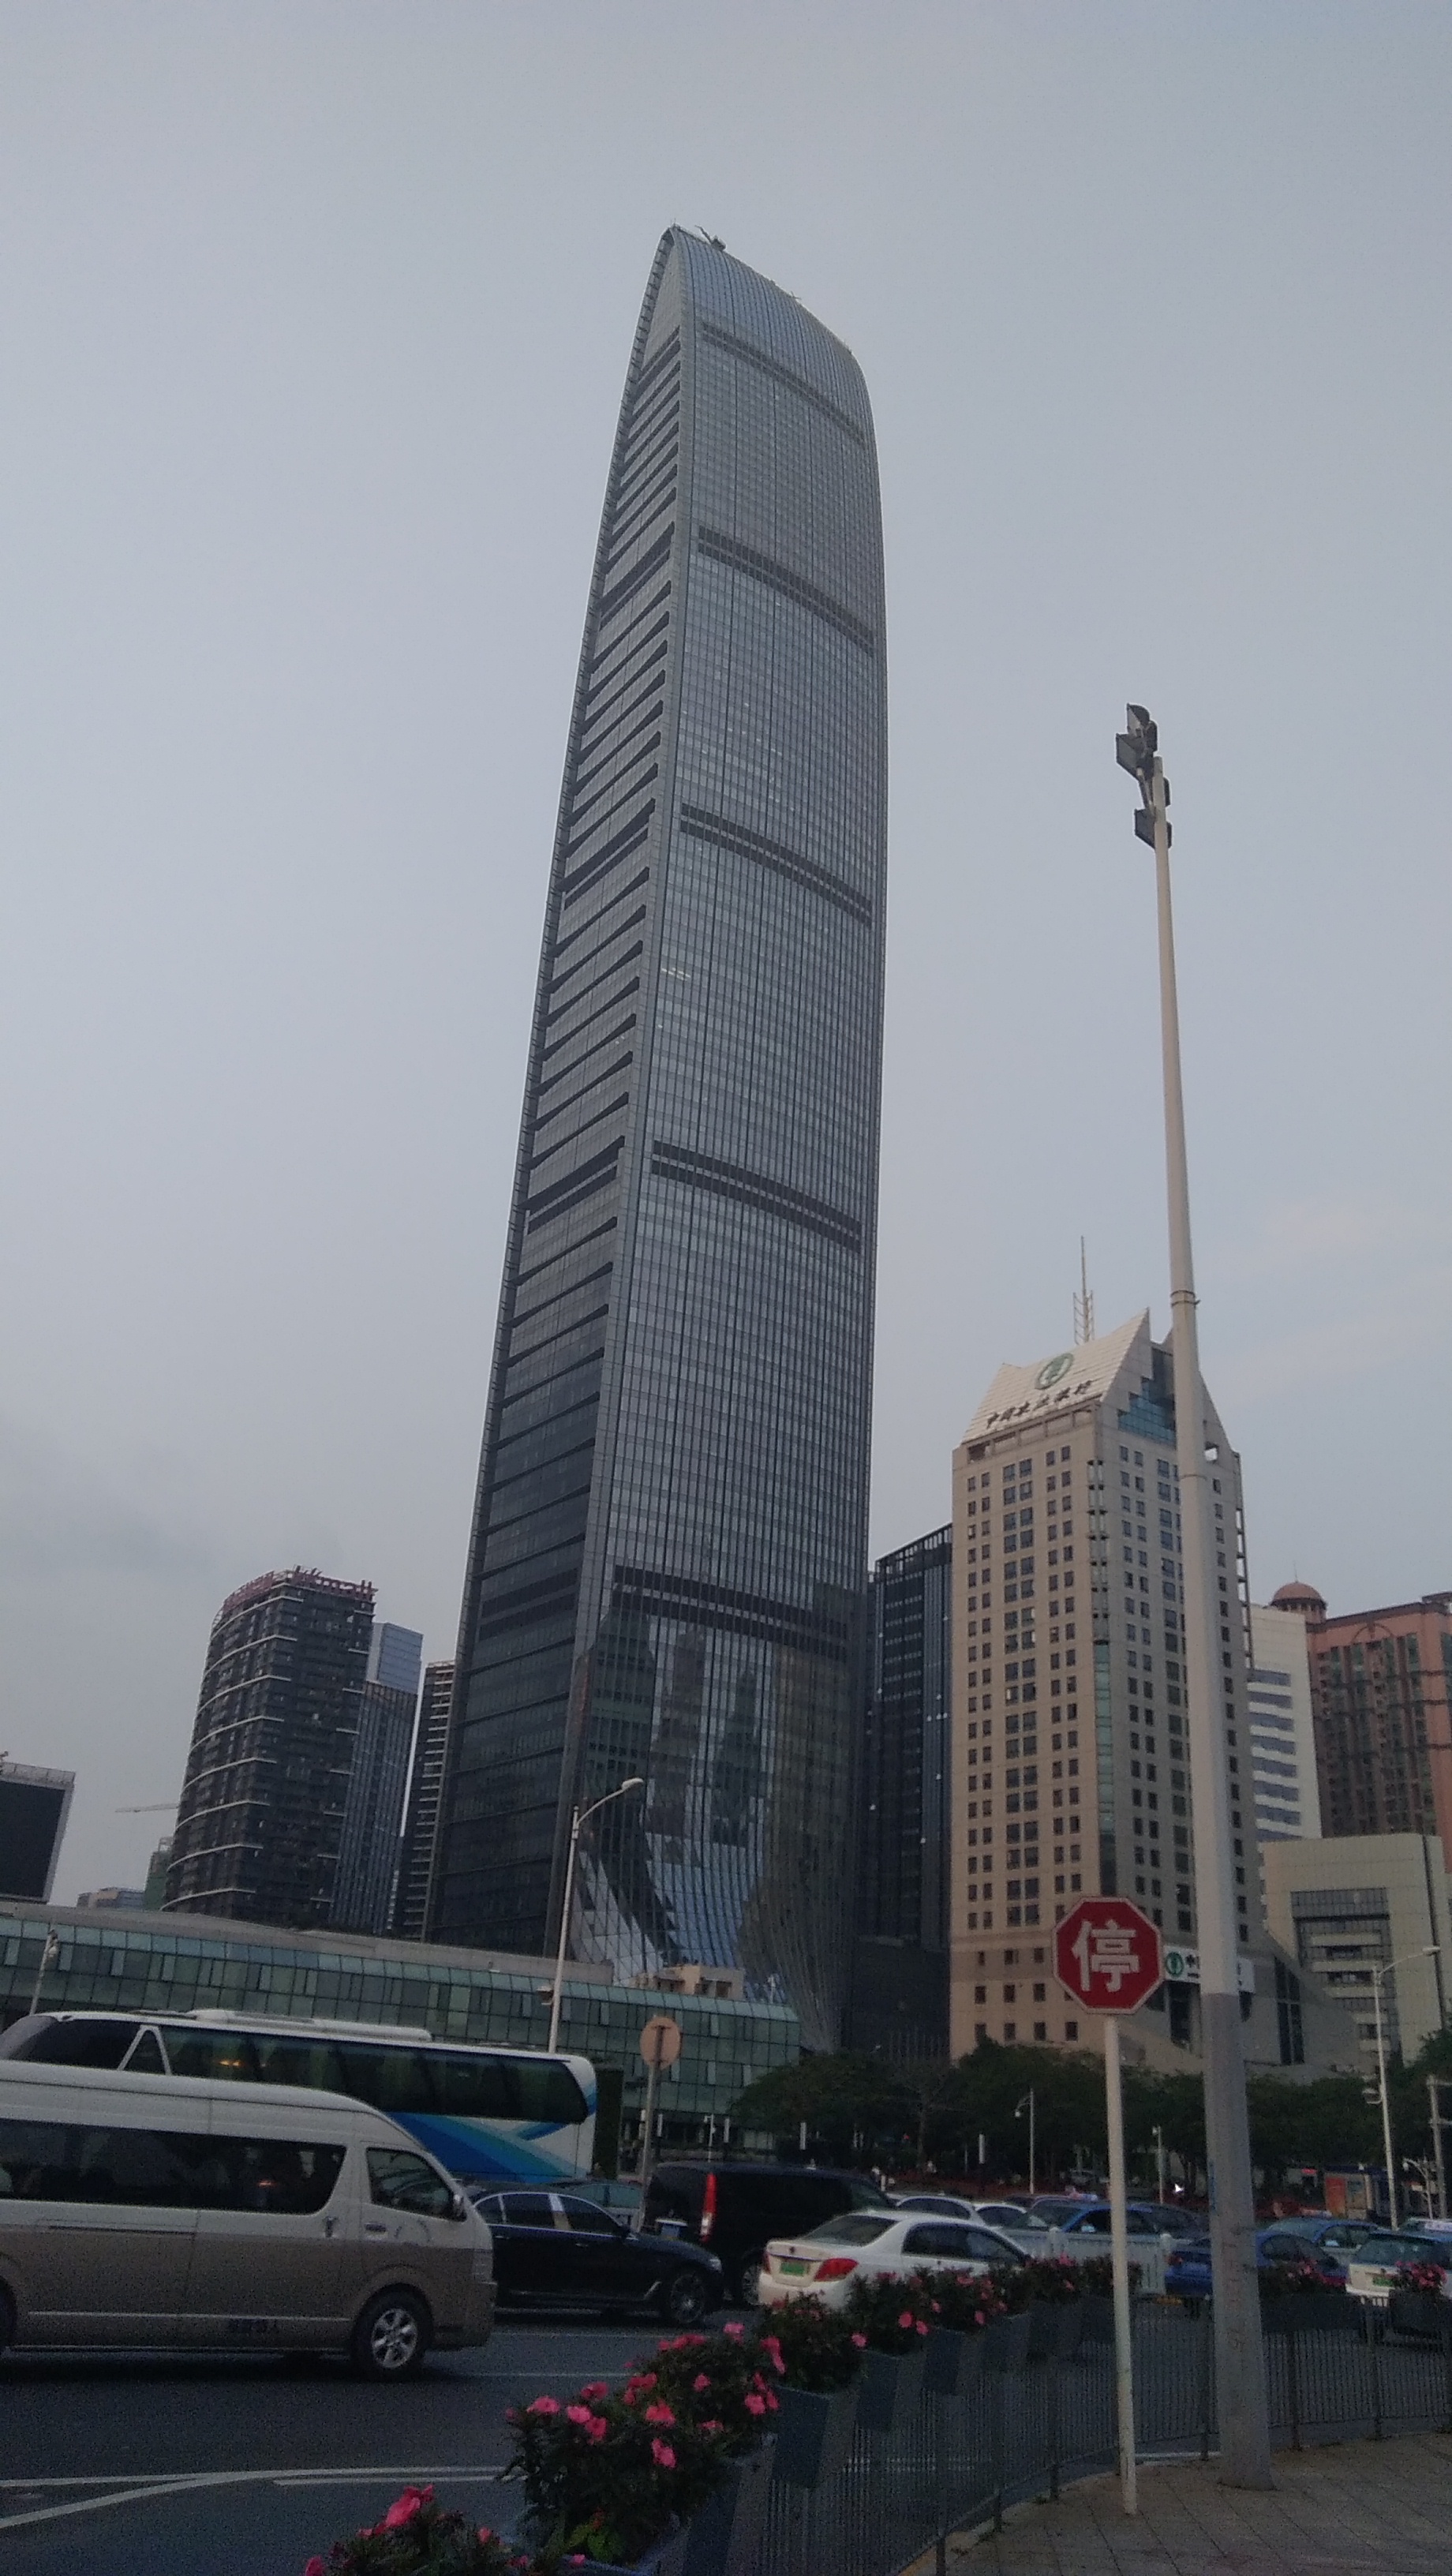 高耸的京基一百大厦,像一叶风帆般漂浮于由钢筋水泥构成的楼房海洋中